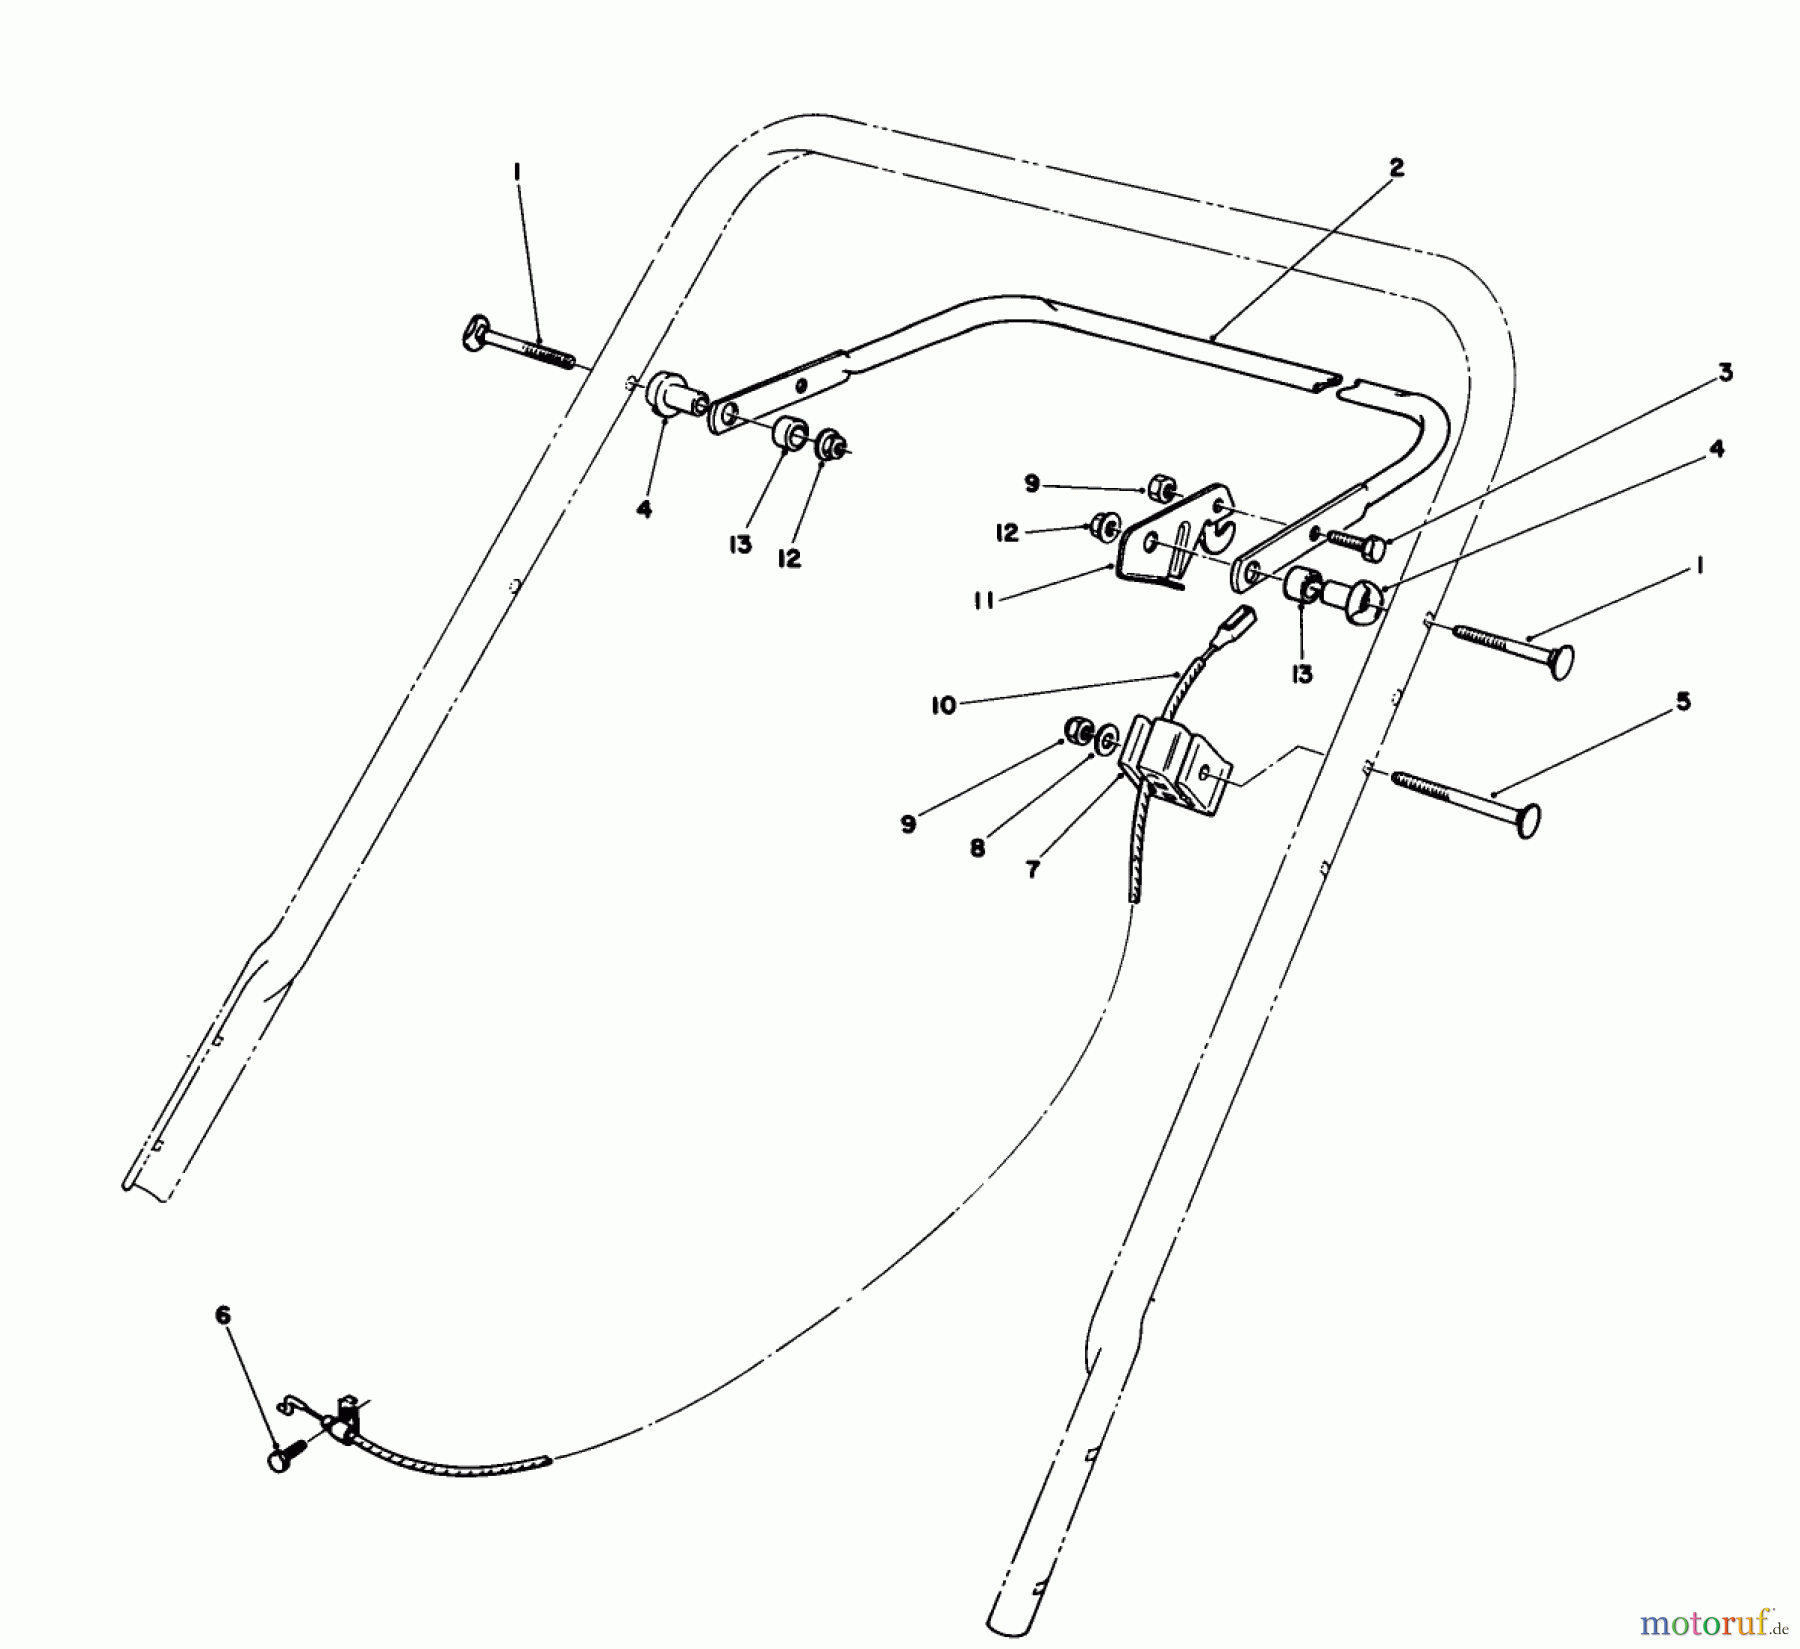  Toro Neu Mowers, Walk-Behind Seite 1 20531 - Toro Lawnmower, 1989 (9000001-9999999) CONTROL ASSEMBLY